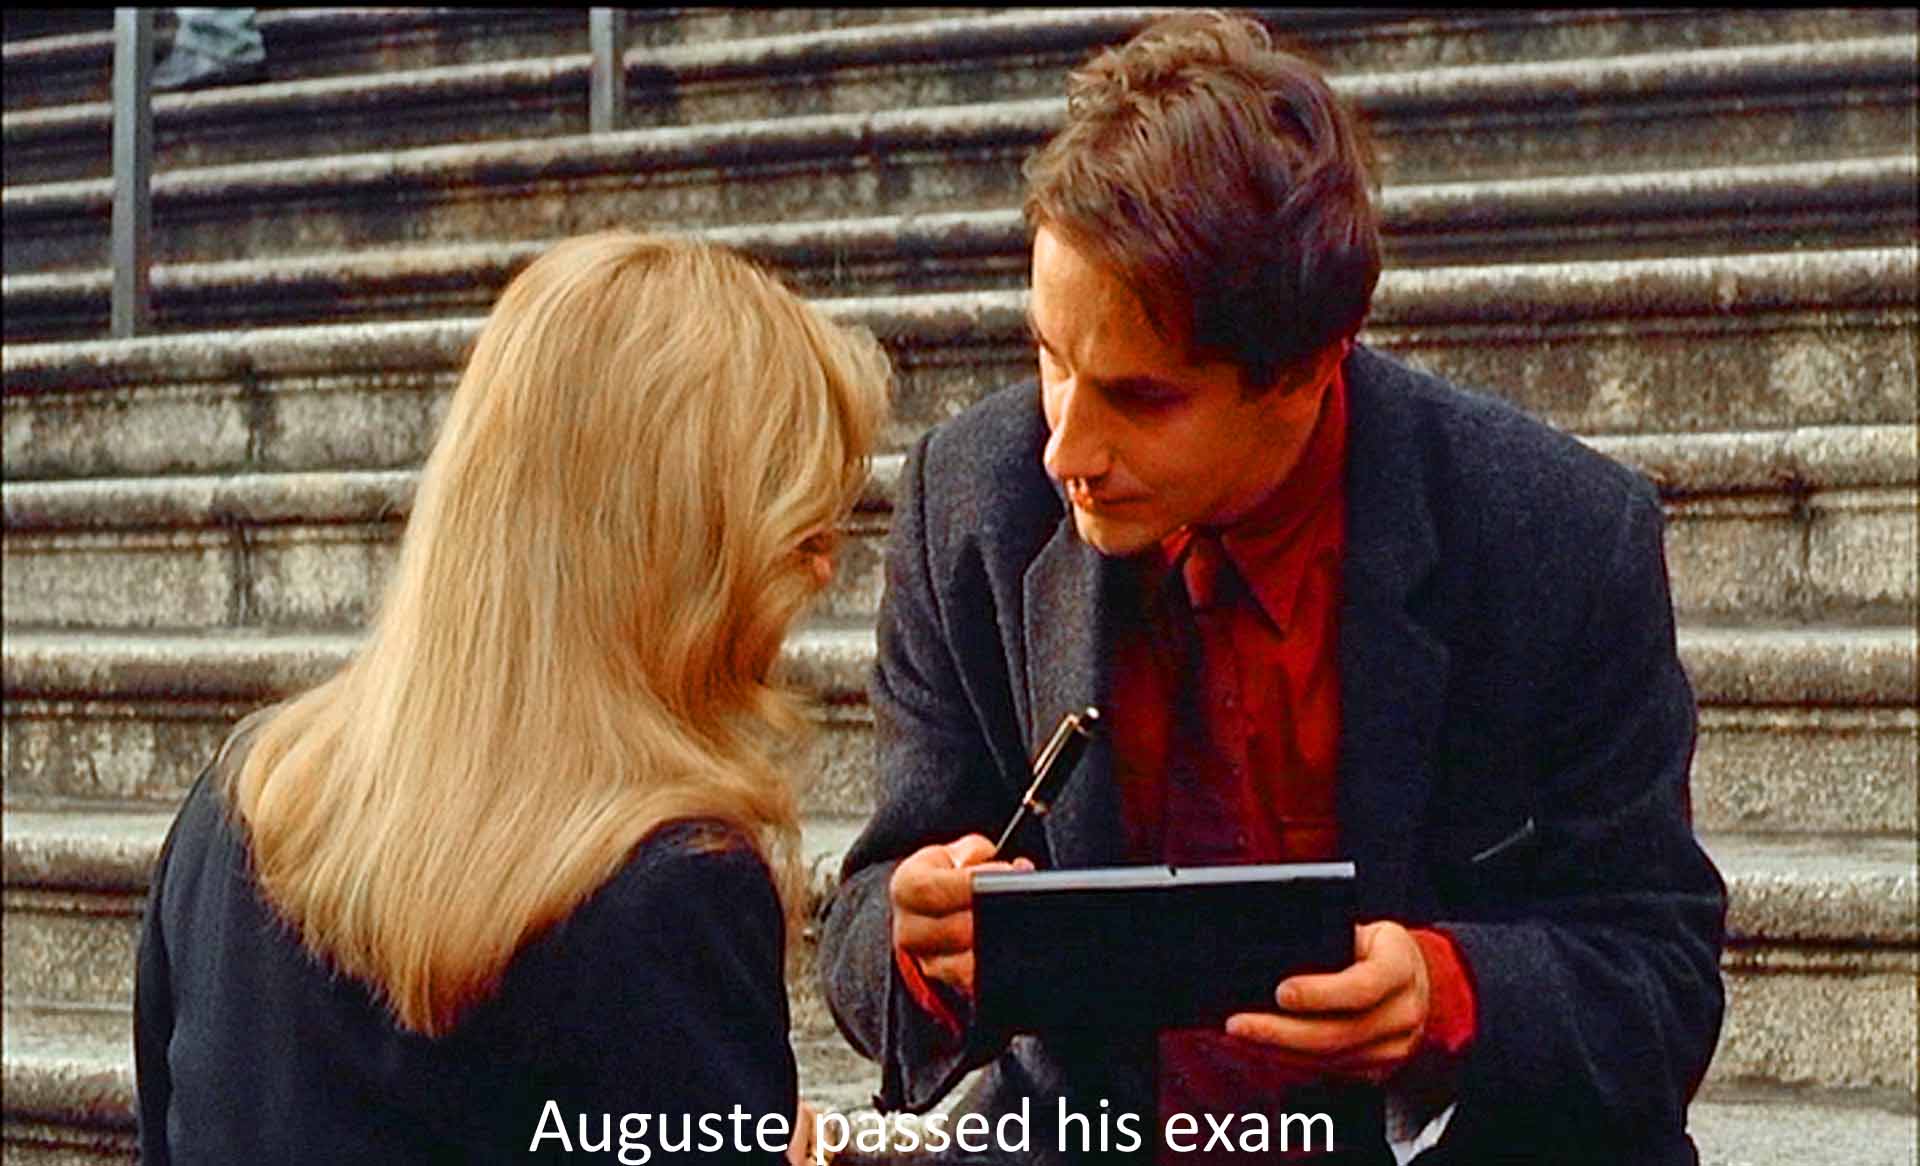 Auguste passed his exam